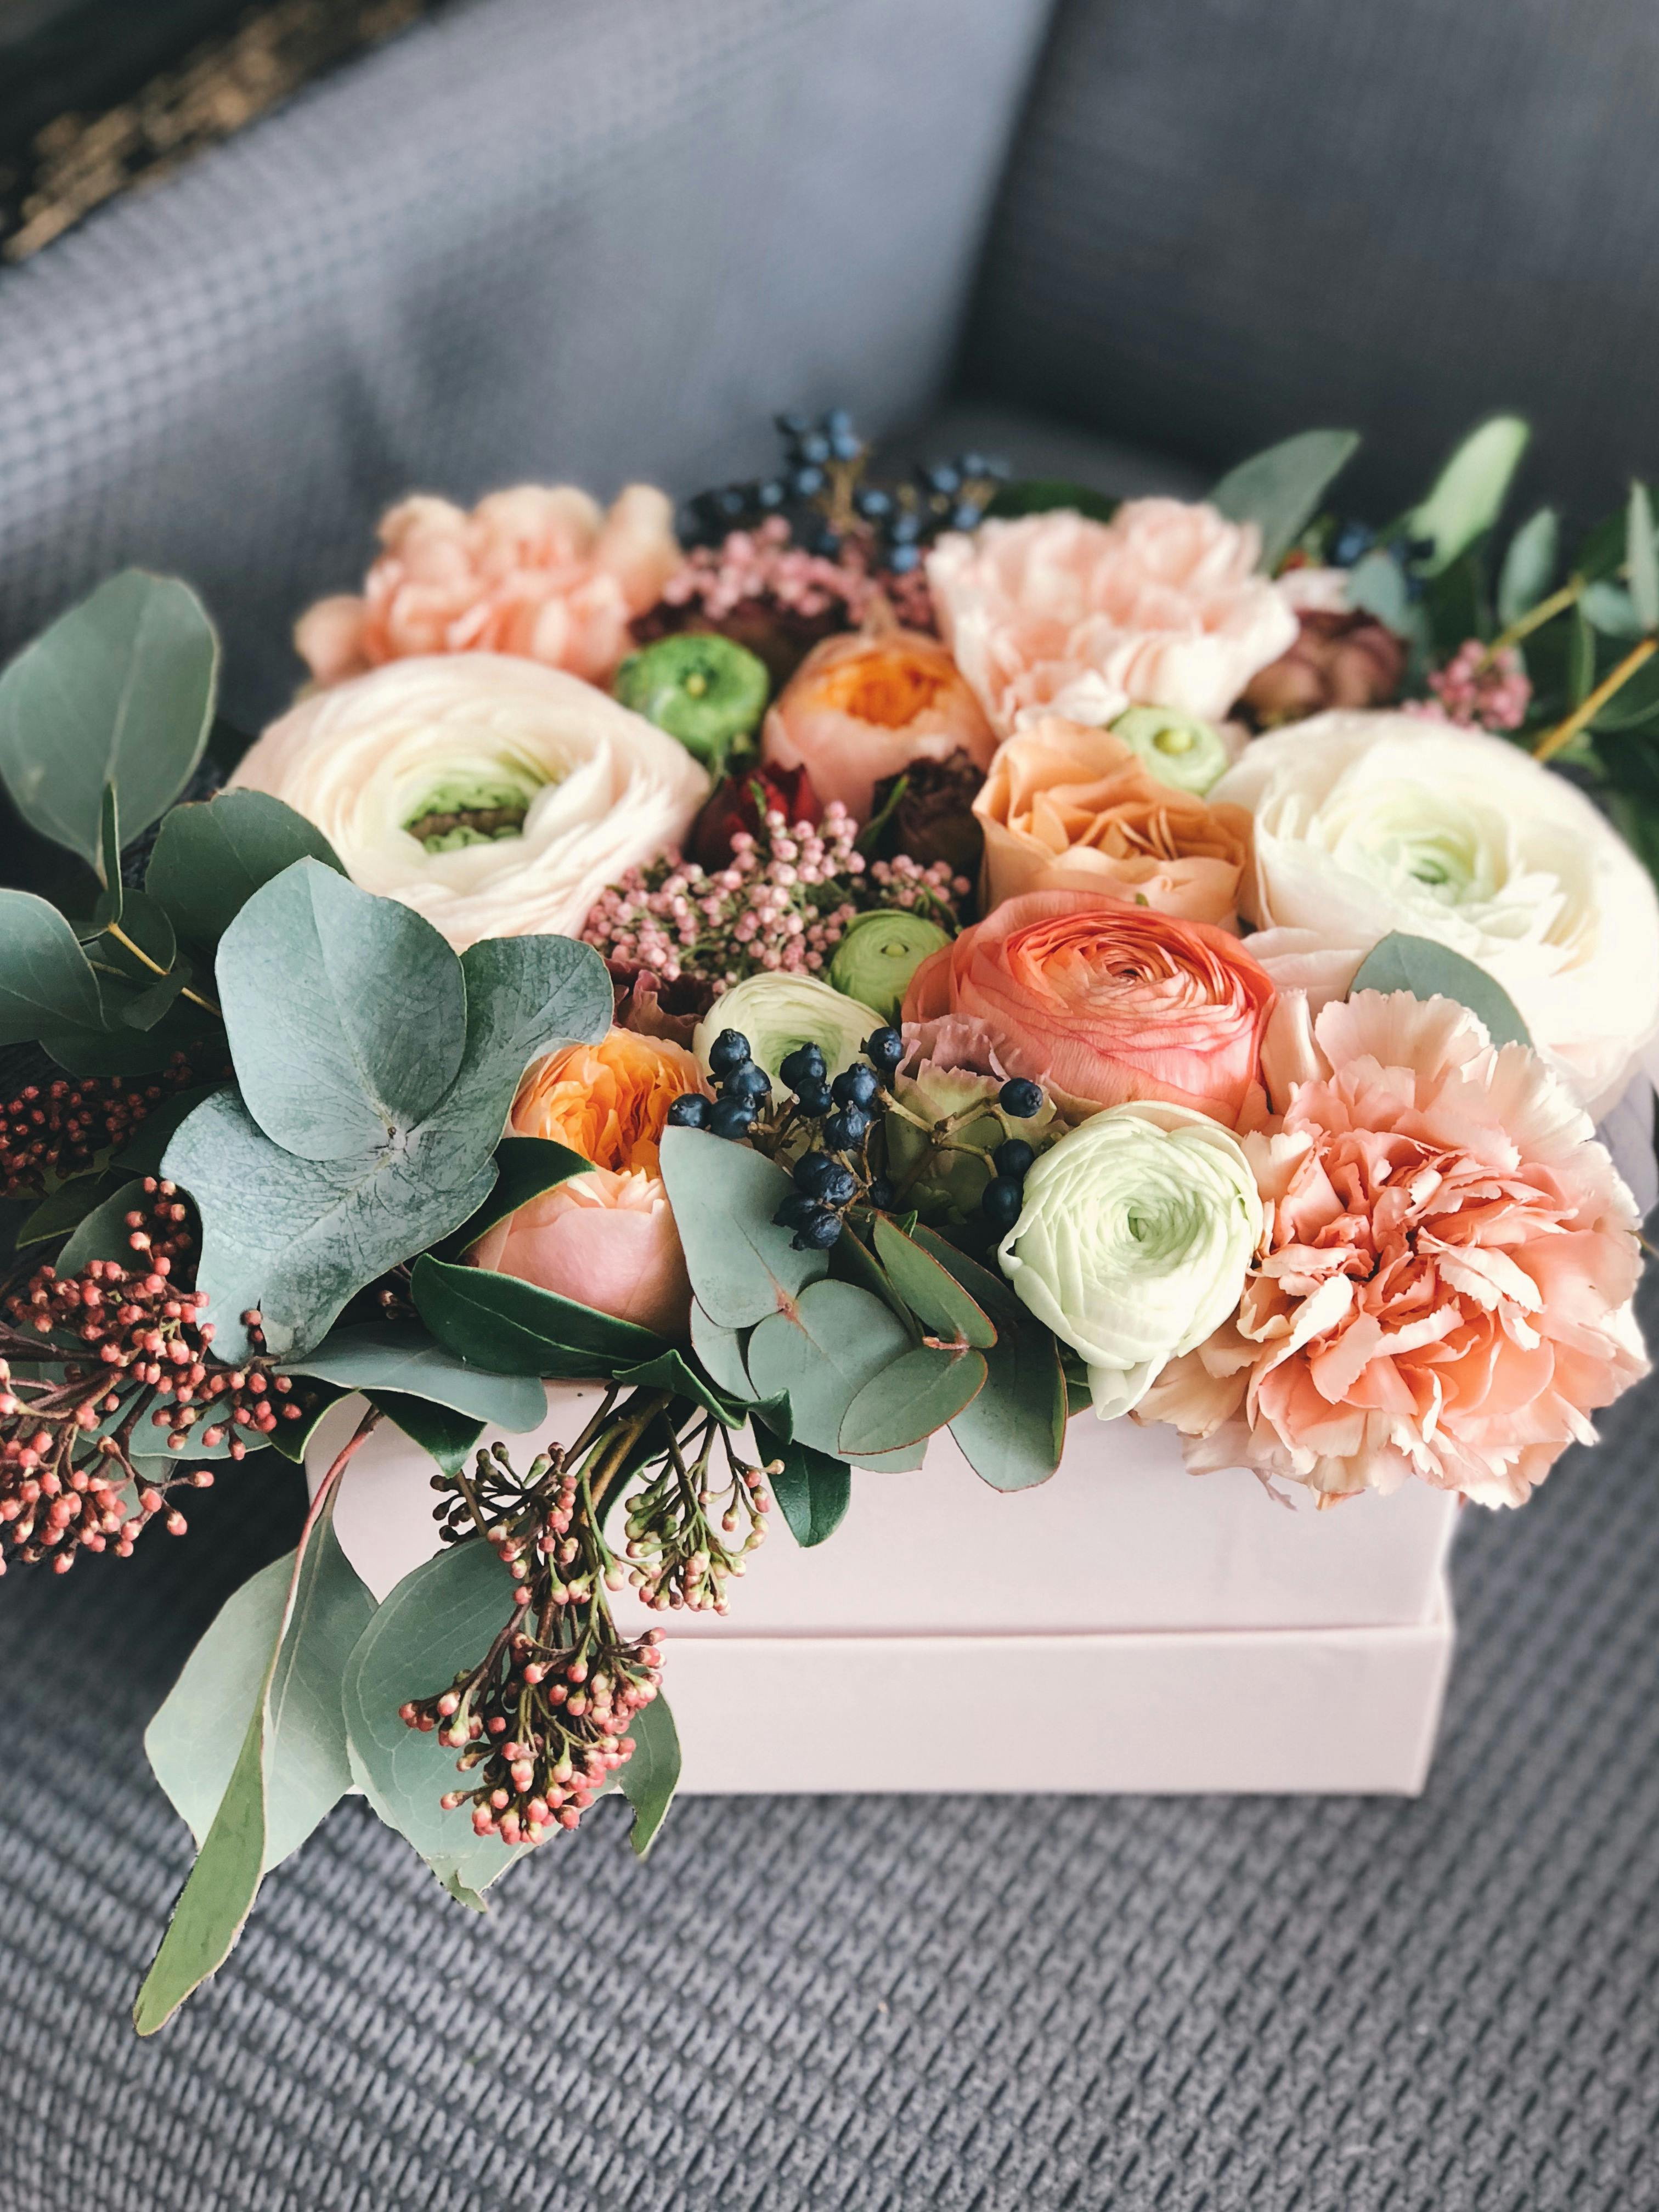 Ein Blumenarrangement | Quelle: Pexels